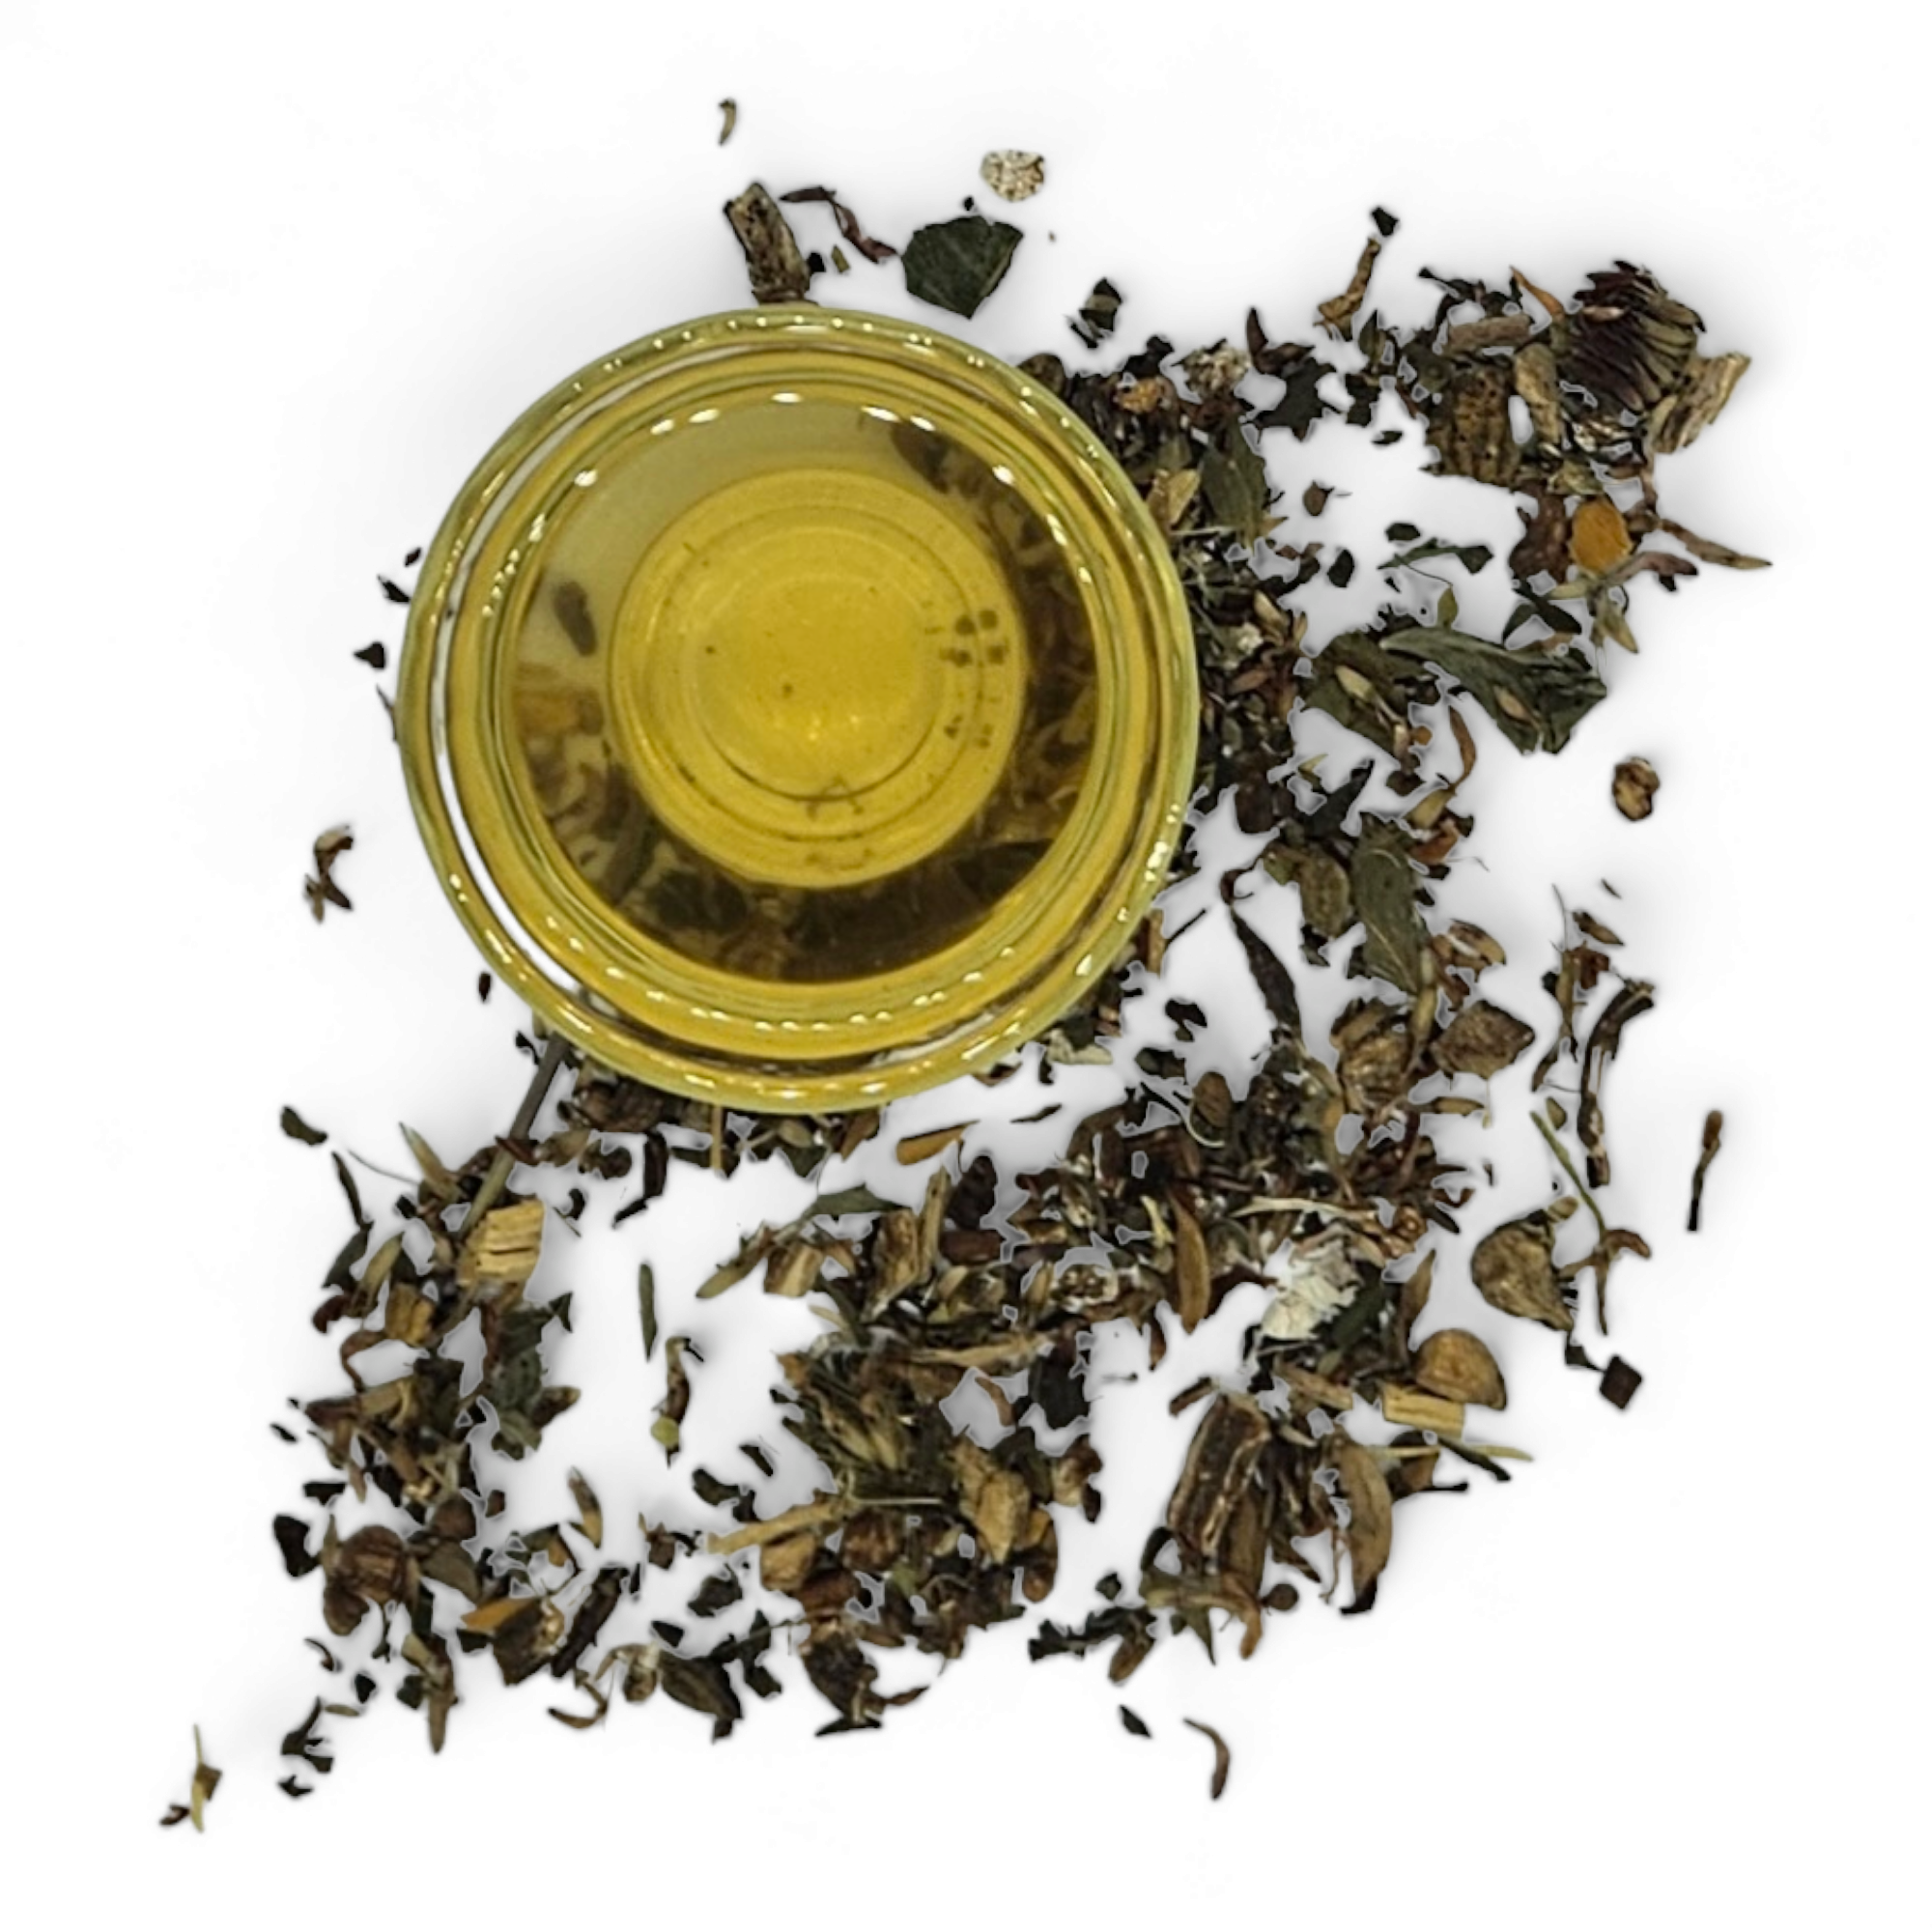 Clean Start Herbal Tea